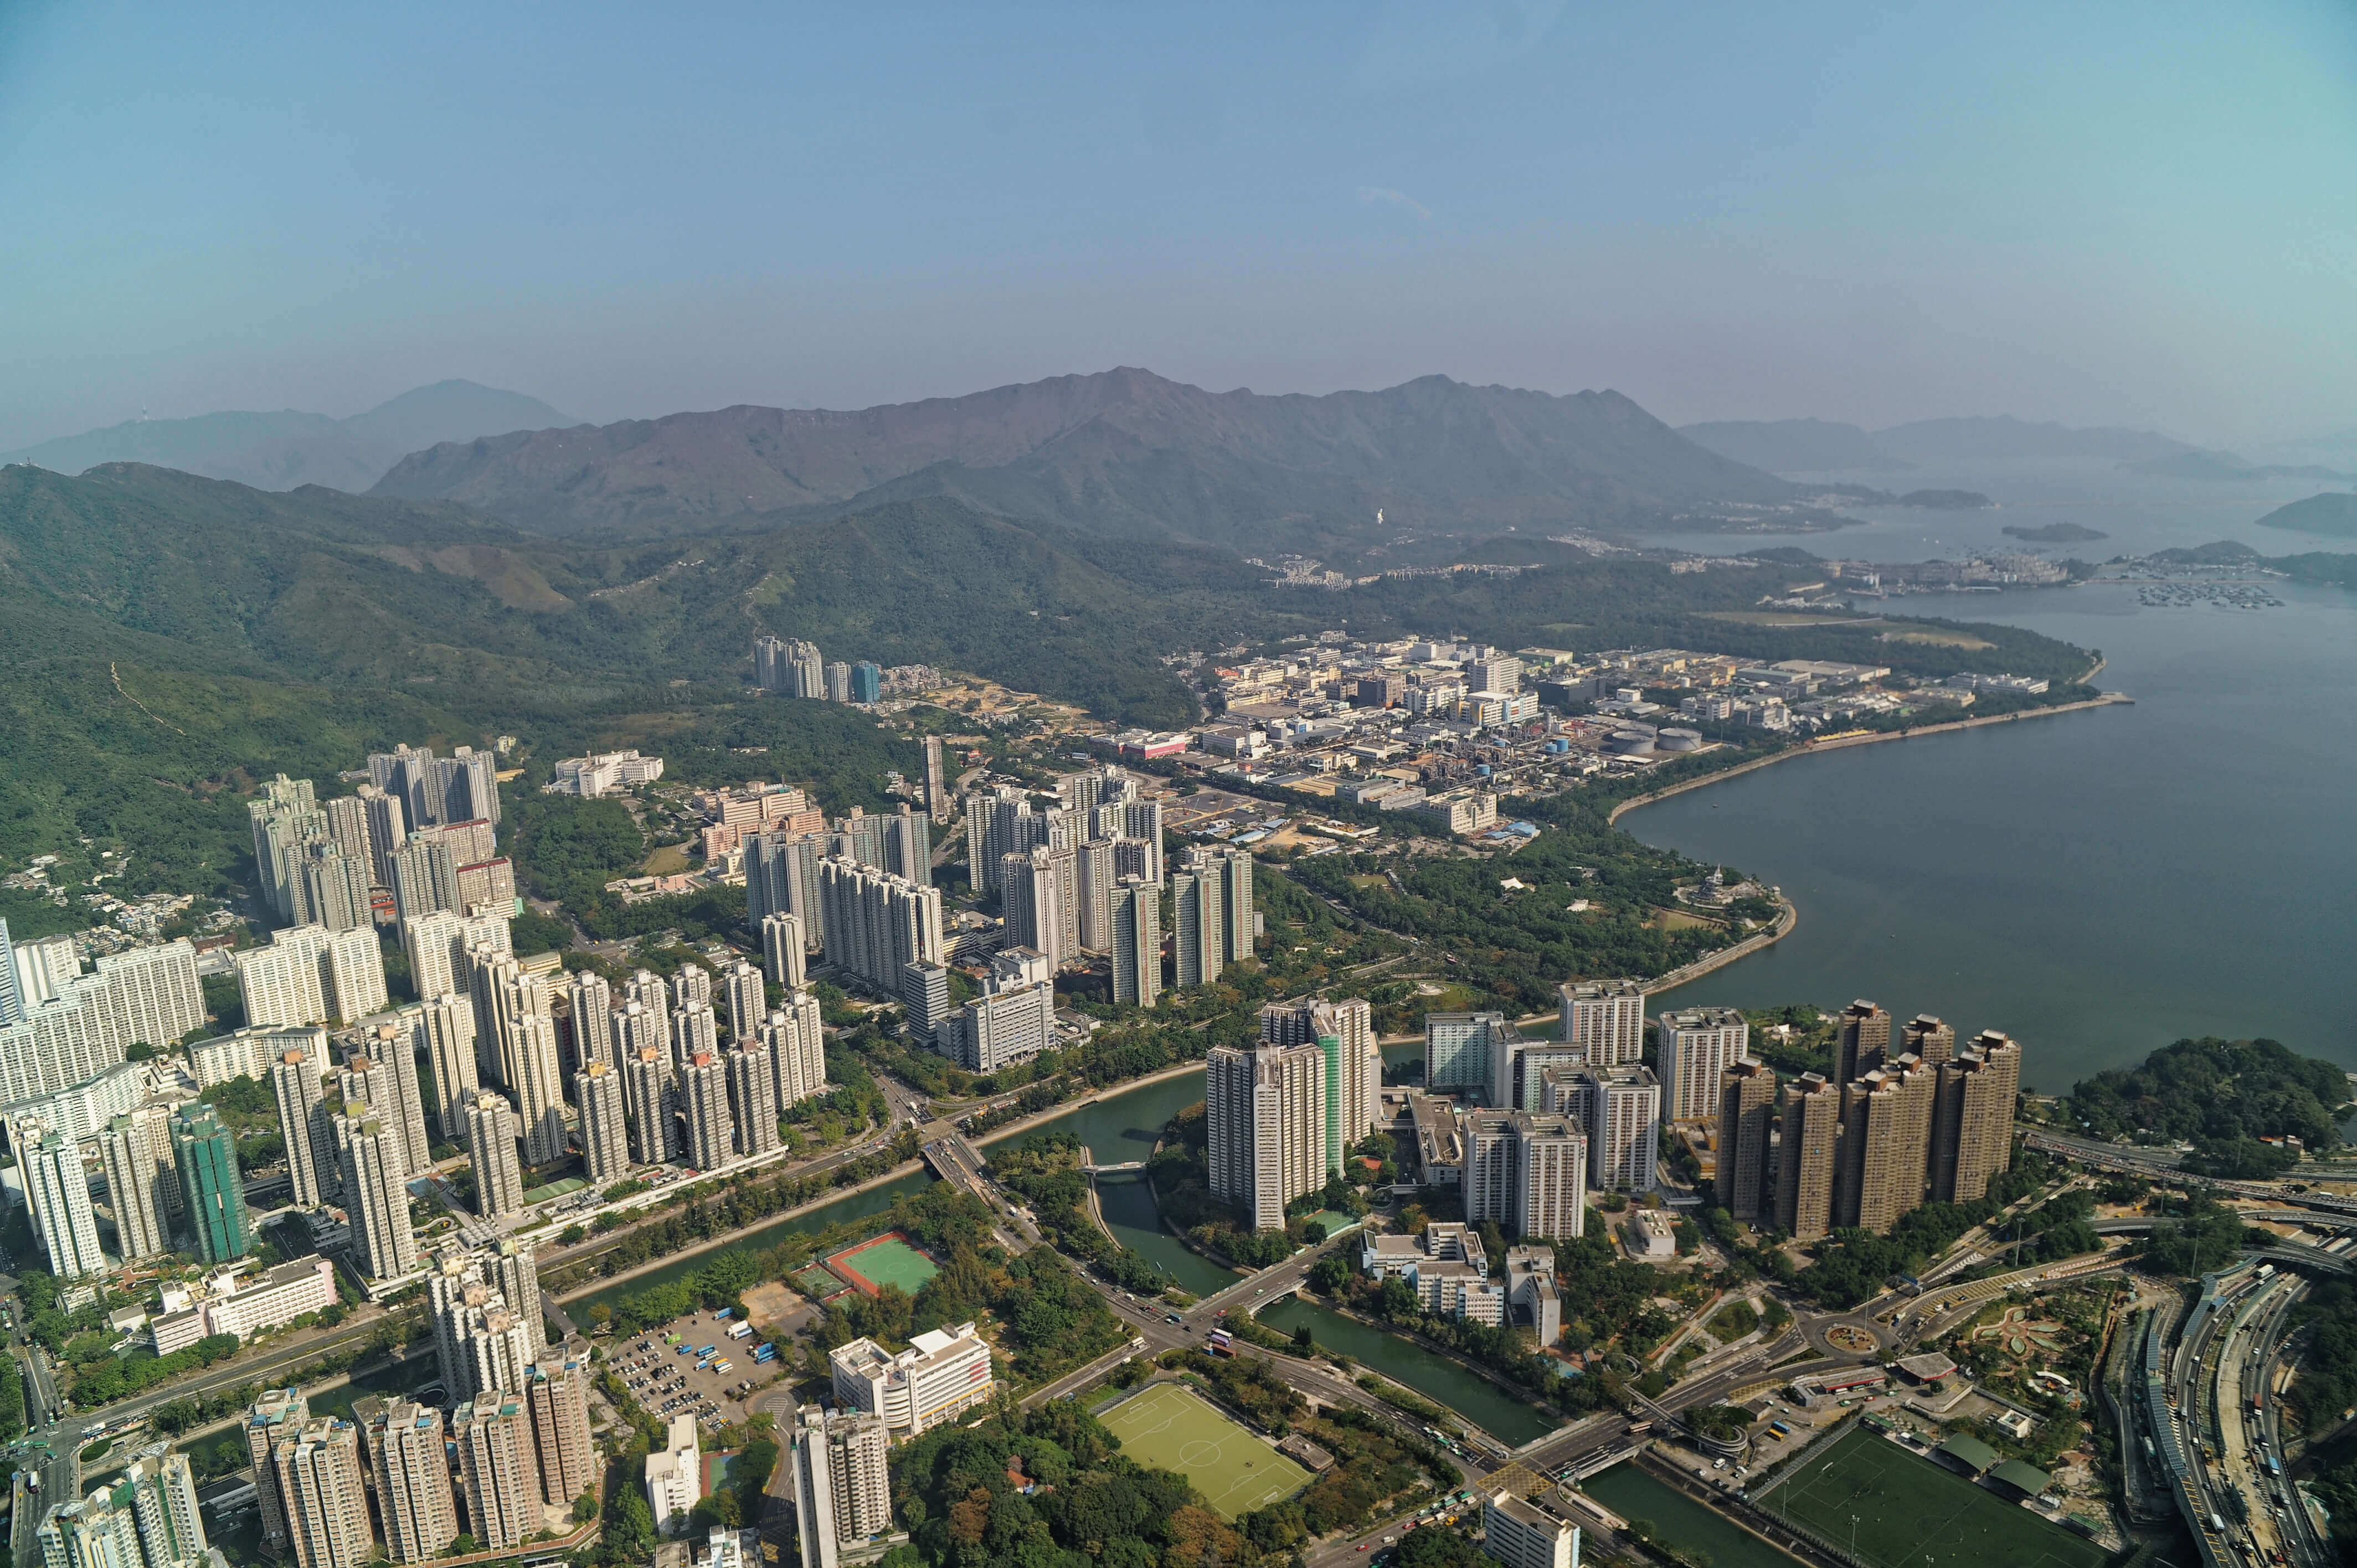 Tai Po Development in 2014